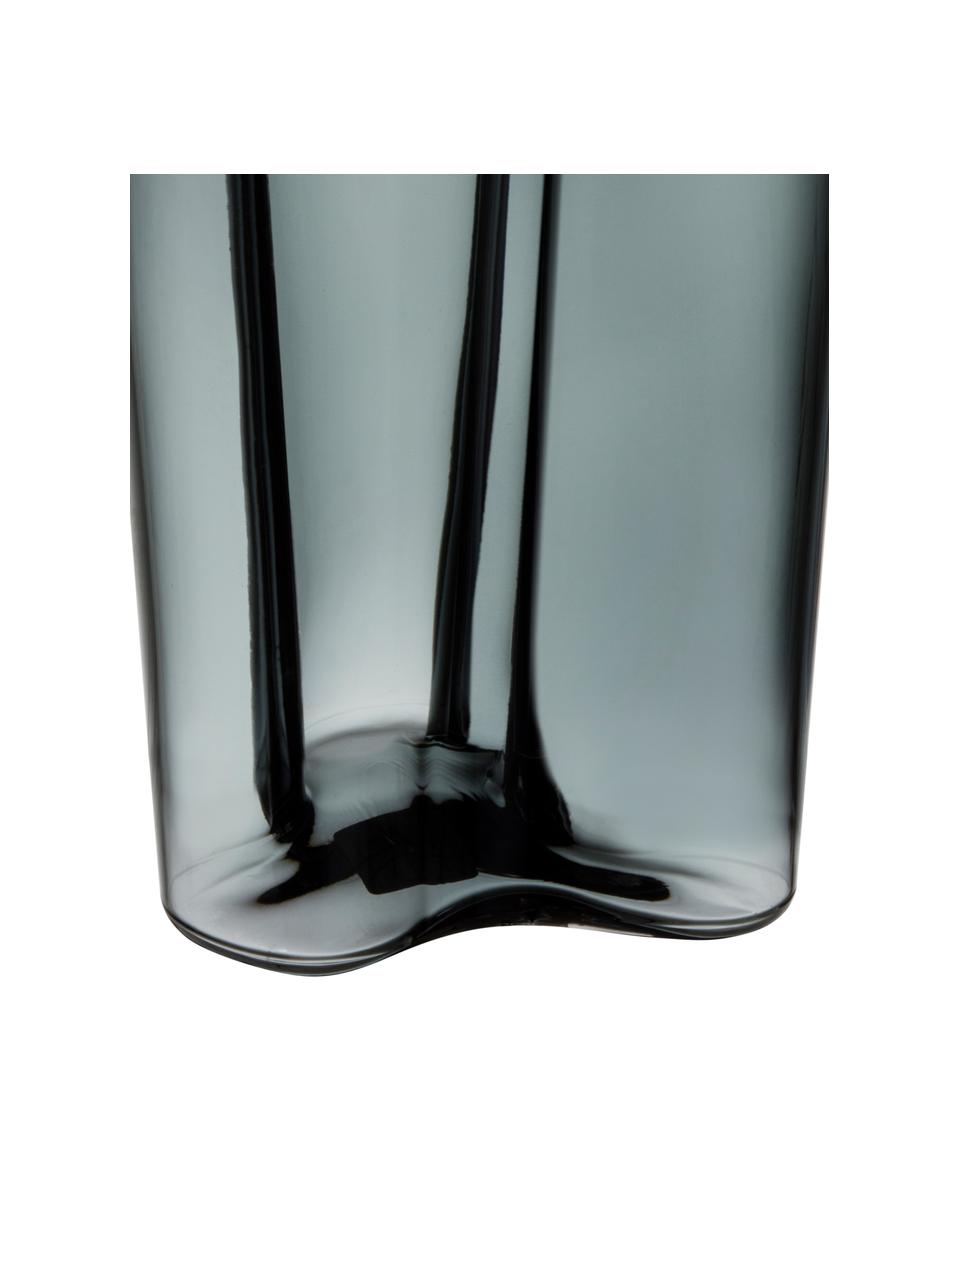 Design-Vase Alvar Aalto, Glas, Dunkelgrau, 17 x 25 cm